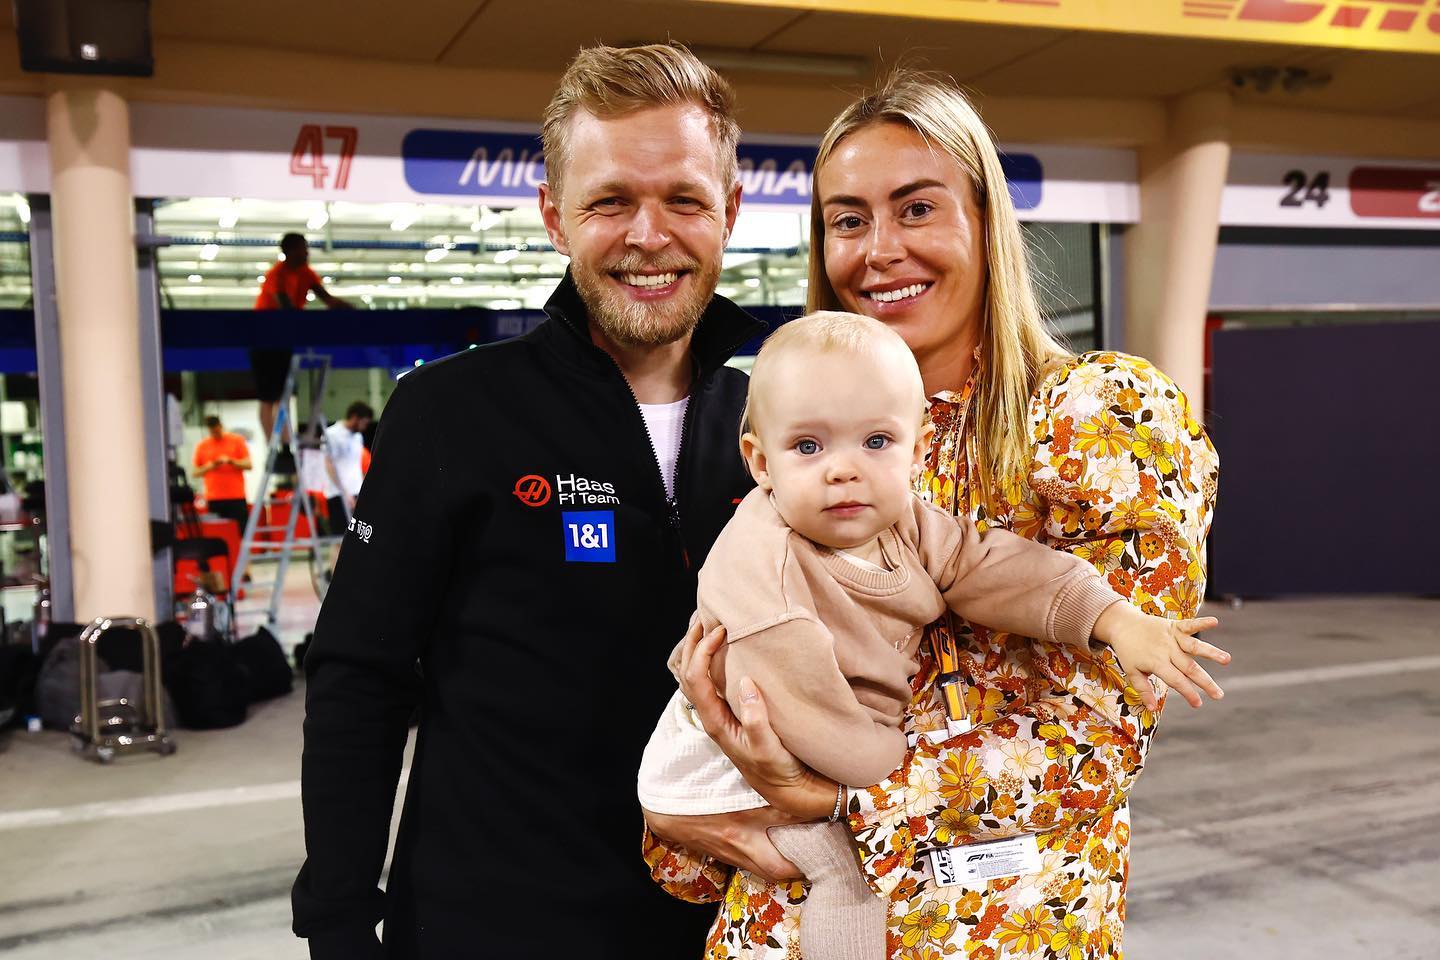 Луиза Гйоруп – жена пилота «Хаас» Кевина Магнуссена. Больше всех ждет его первую победу в «Формуле-1»!